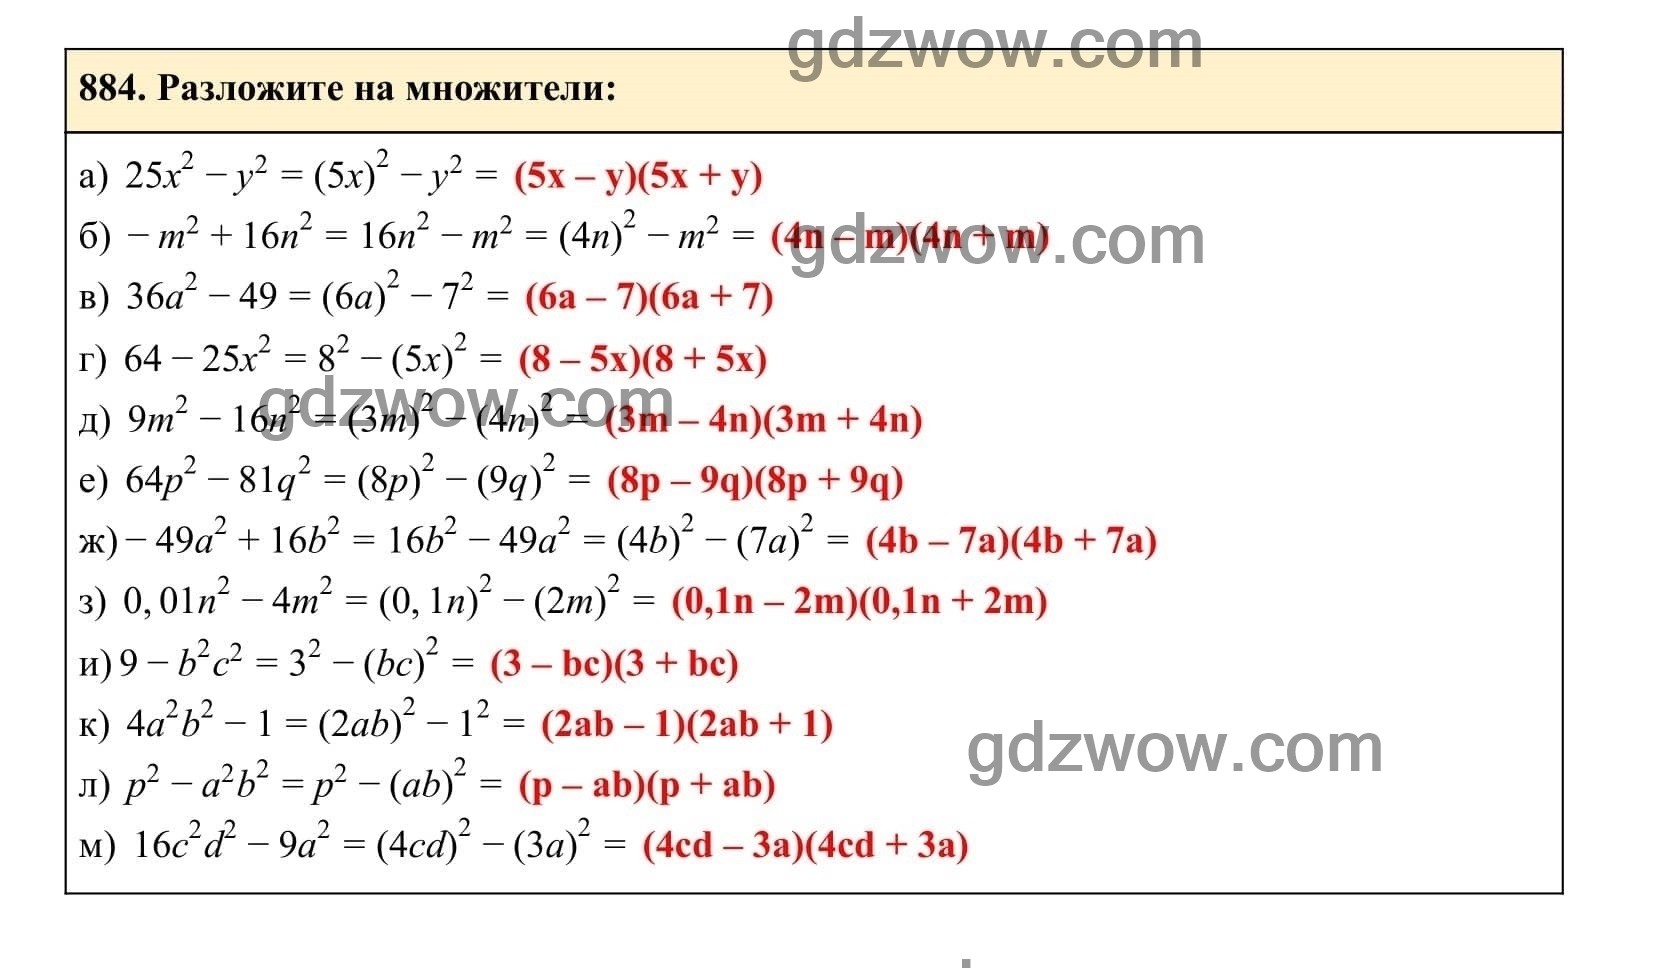 Упражнение 884 - ГДЗ по Алгебре 7 класс Учебник Макарычев (решебник) - GDZwow